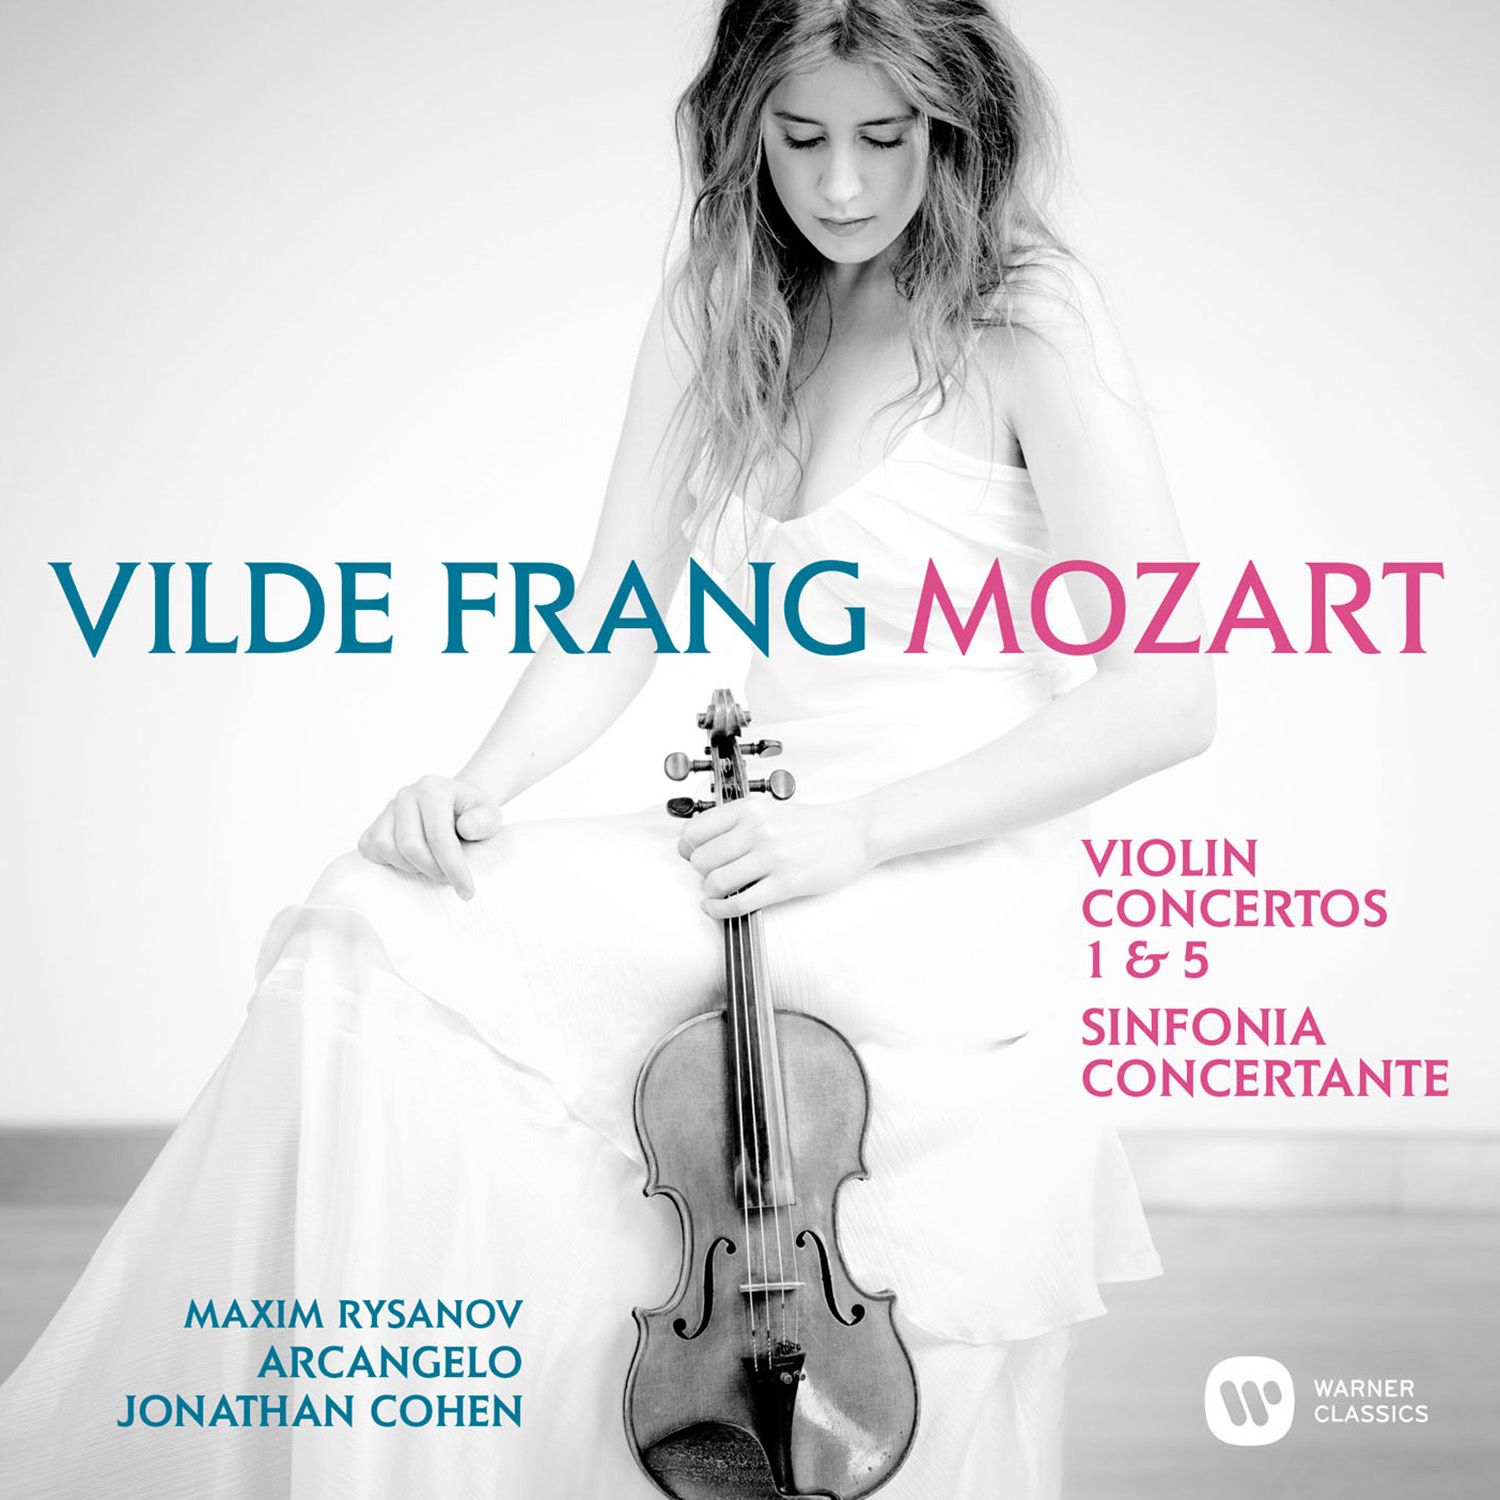 Violin Concerto No. 1 in B-Flat Major, K. 207:II. Adagio (Cadenzas - Cohen)